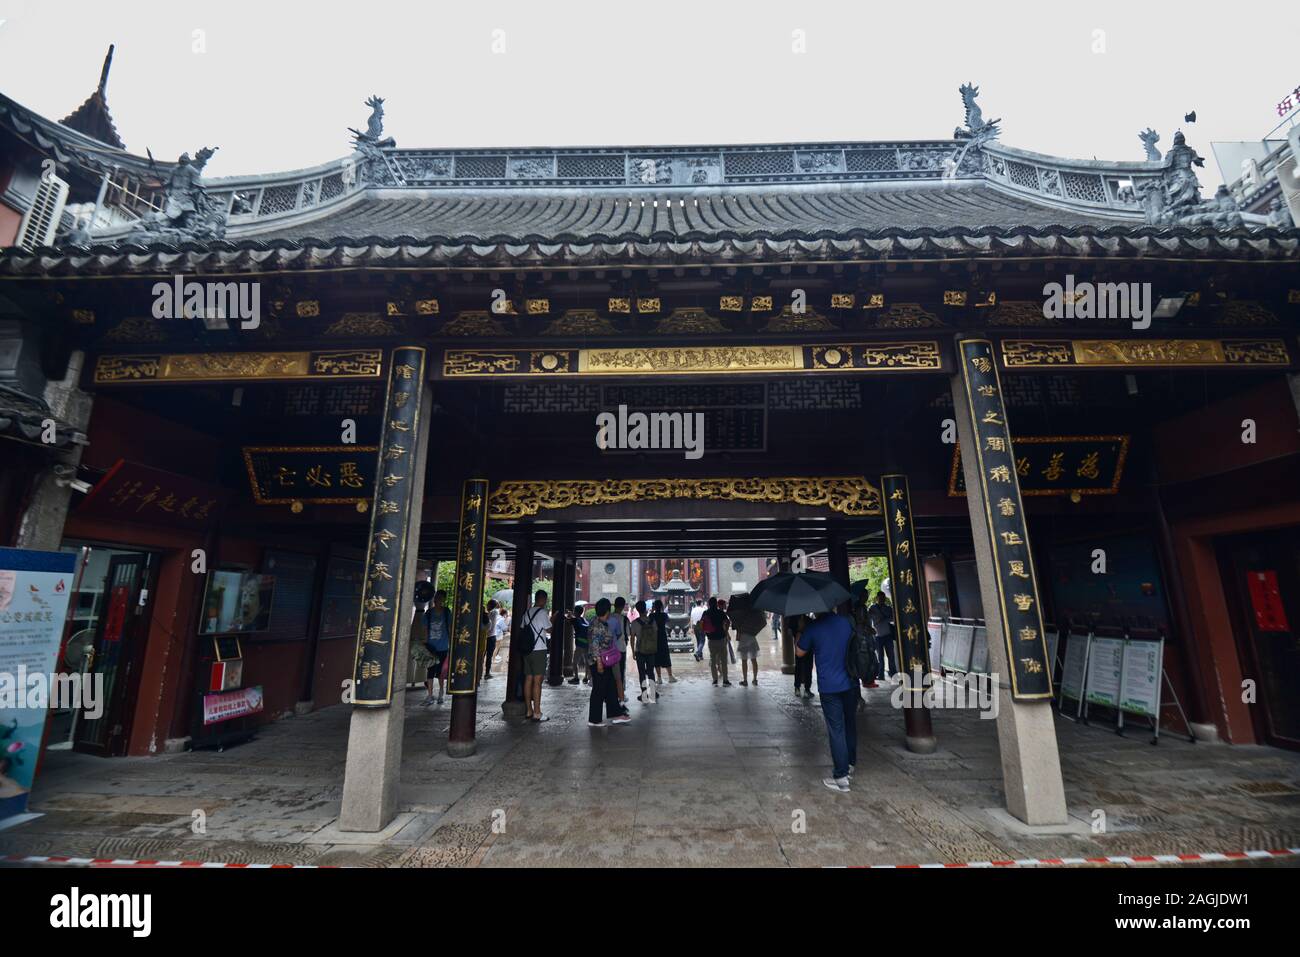 City God Temple of Shanghai (China): Main entrance Stock Photo